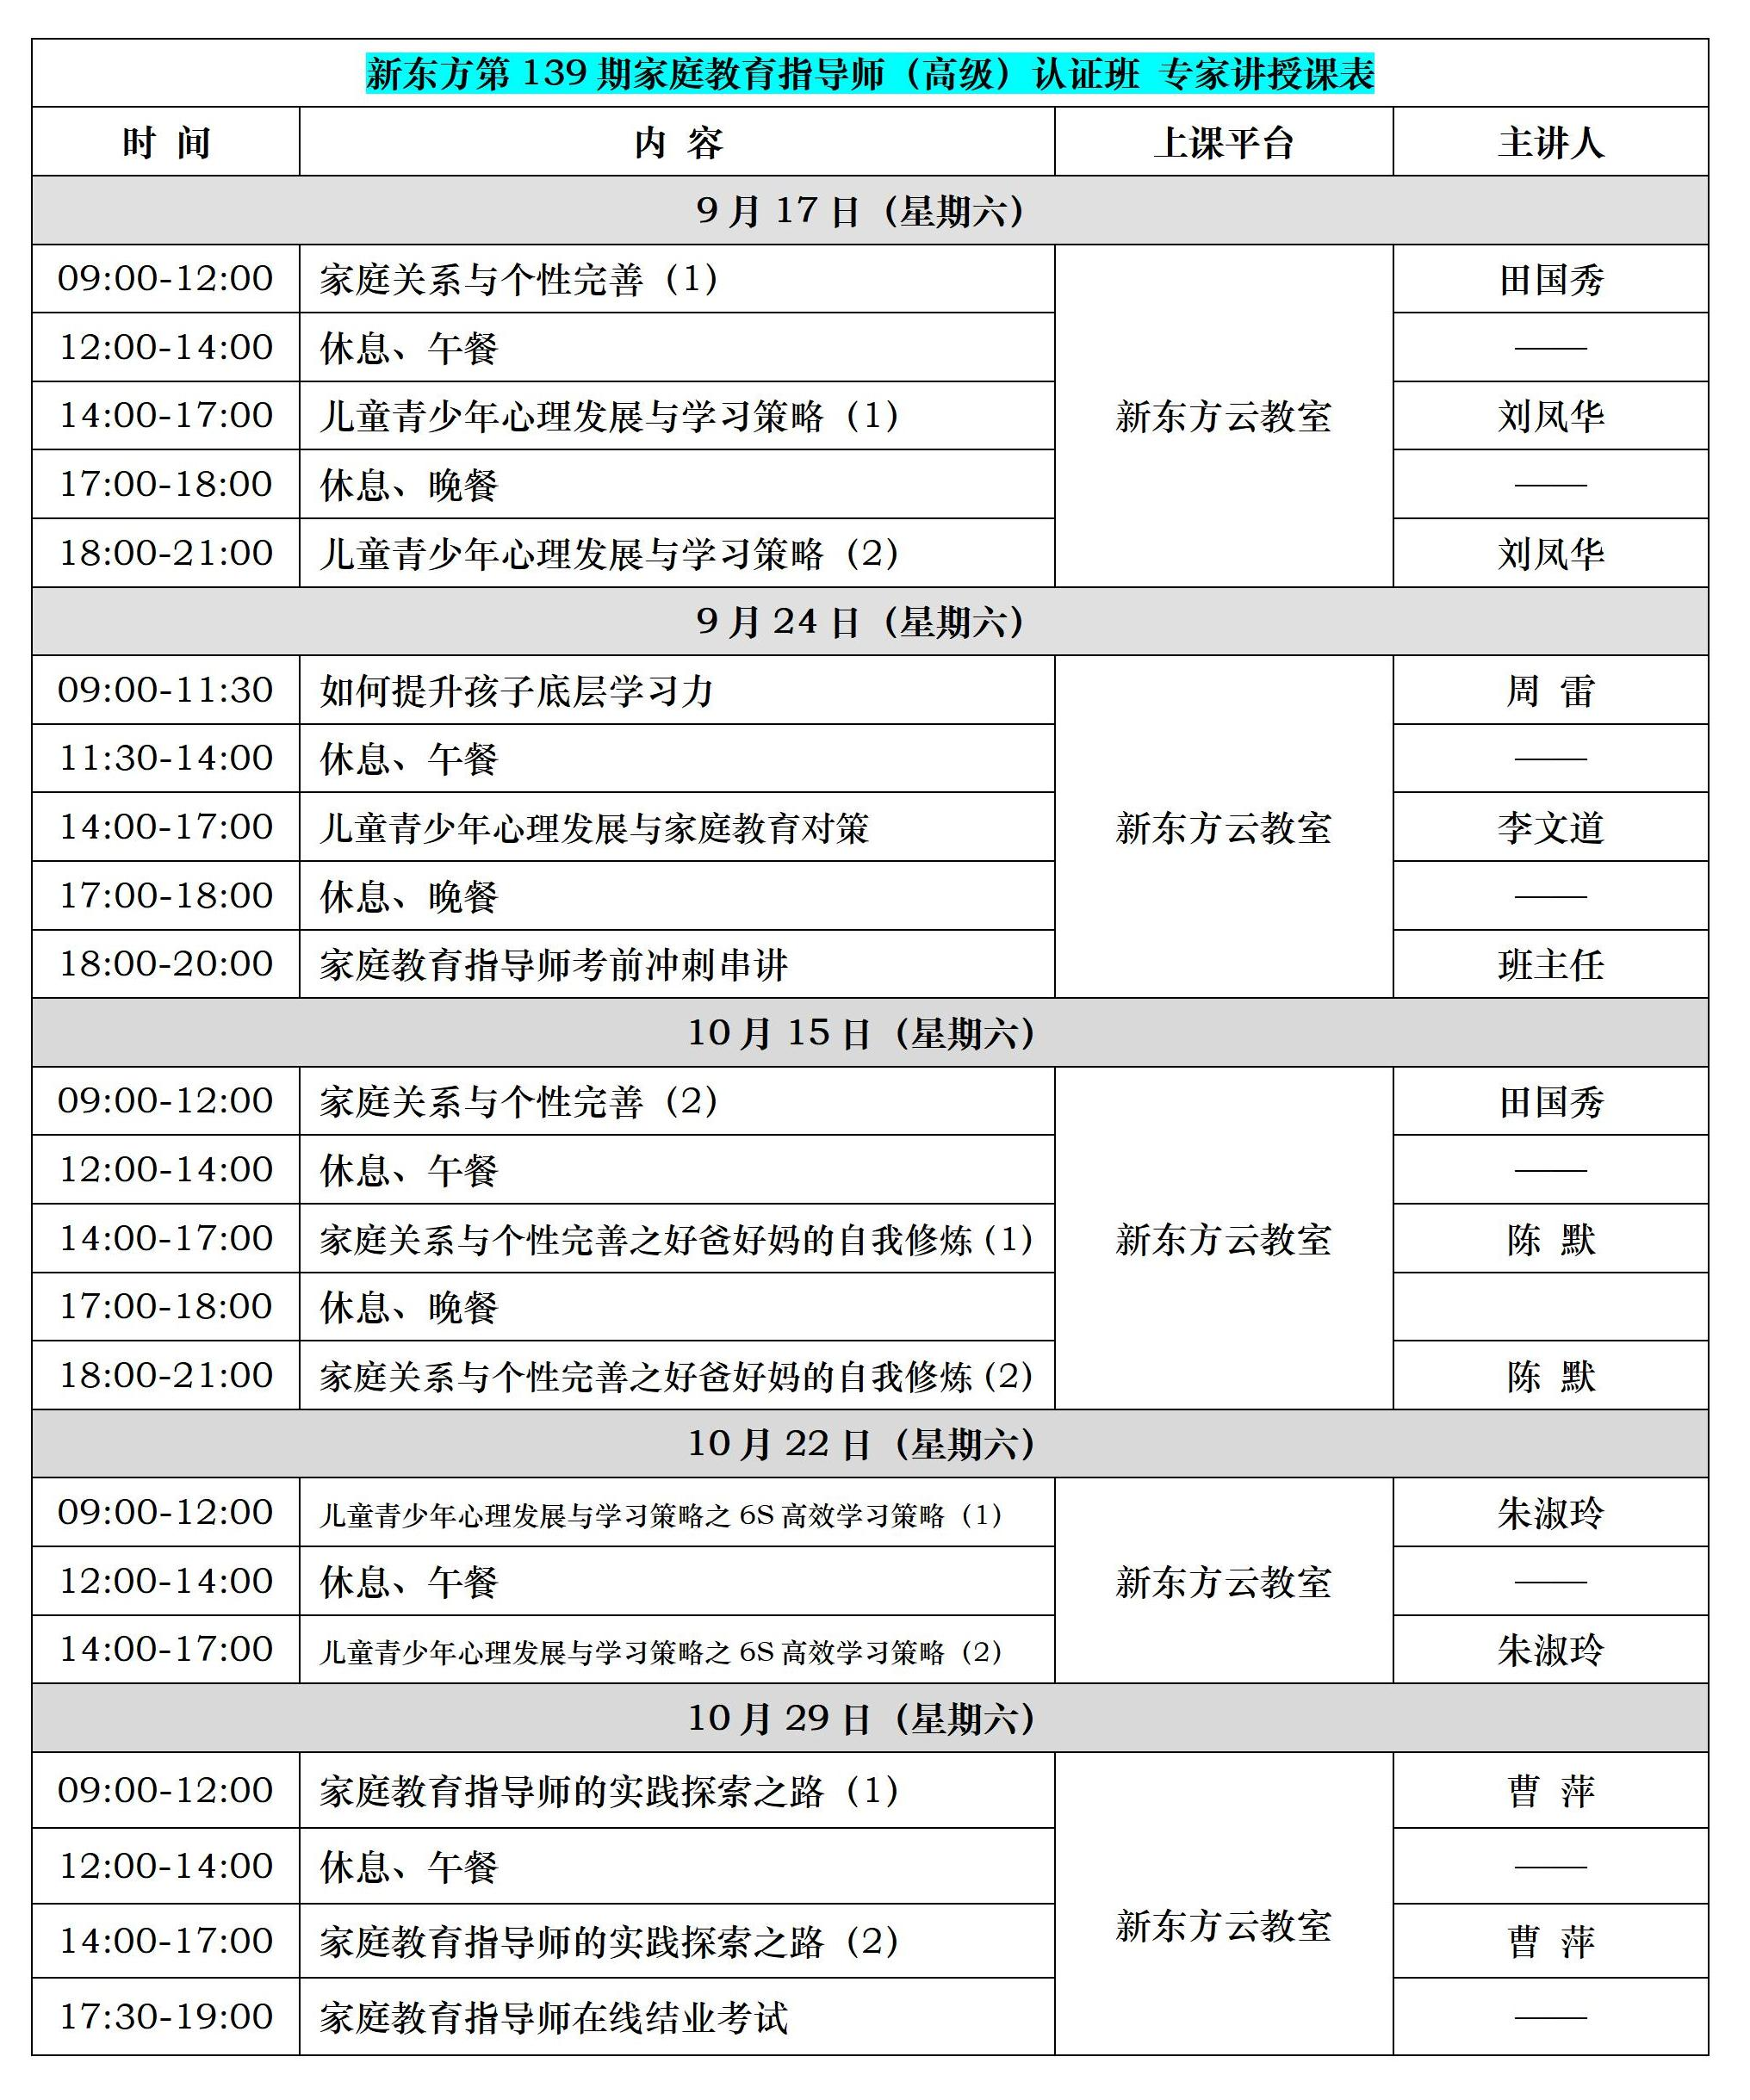 新东方第139期高级指导师认证培训(0917-1029).png